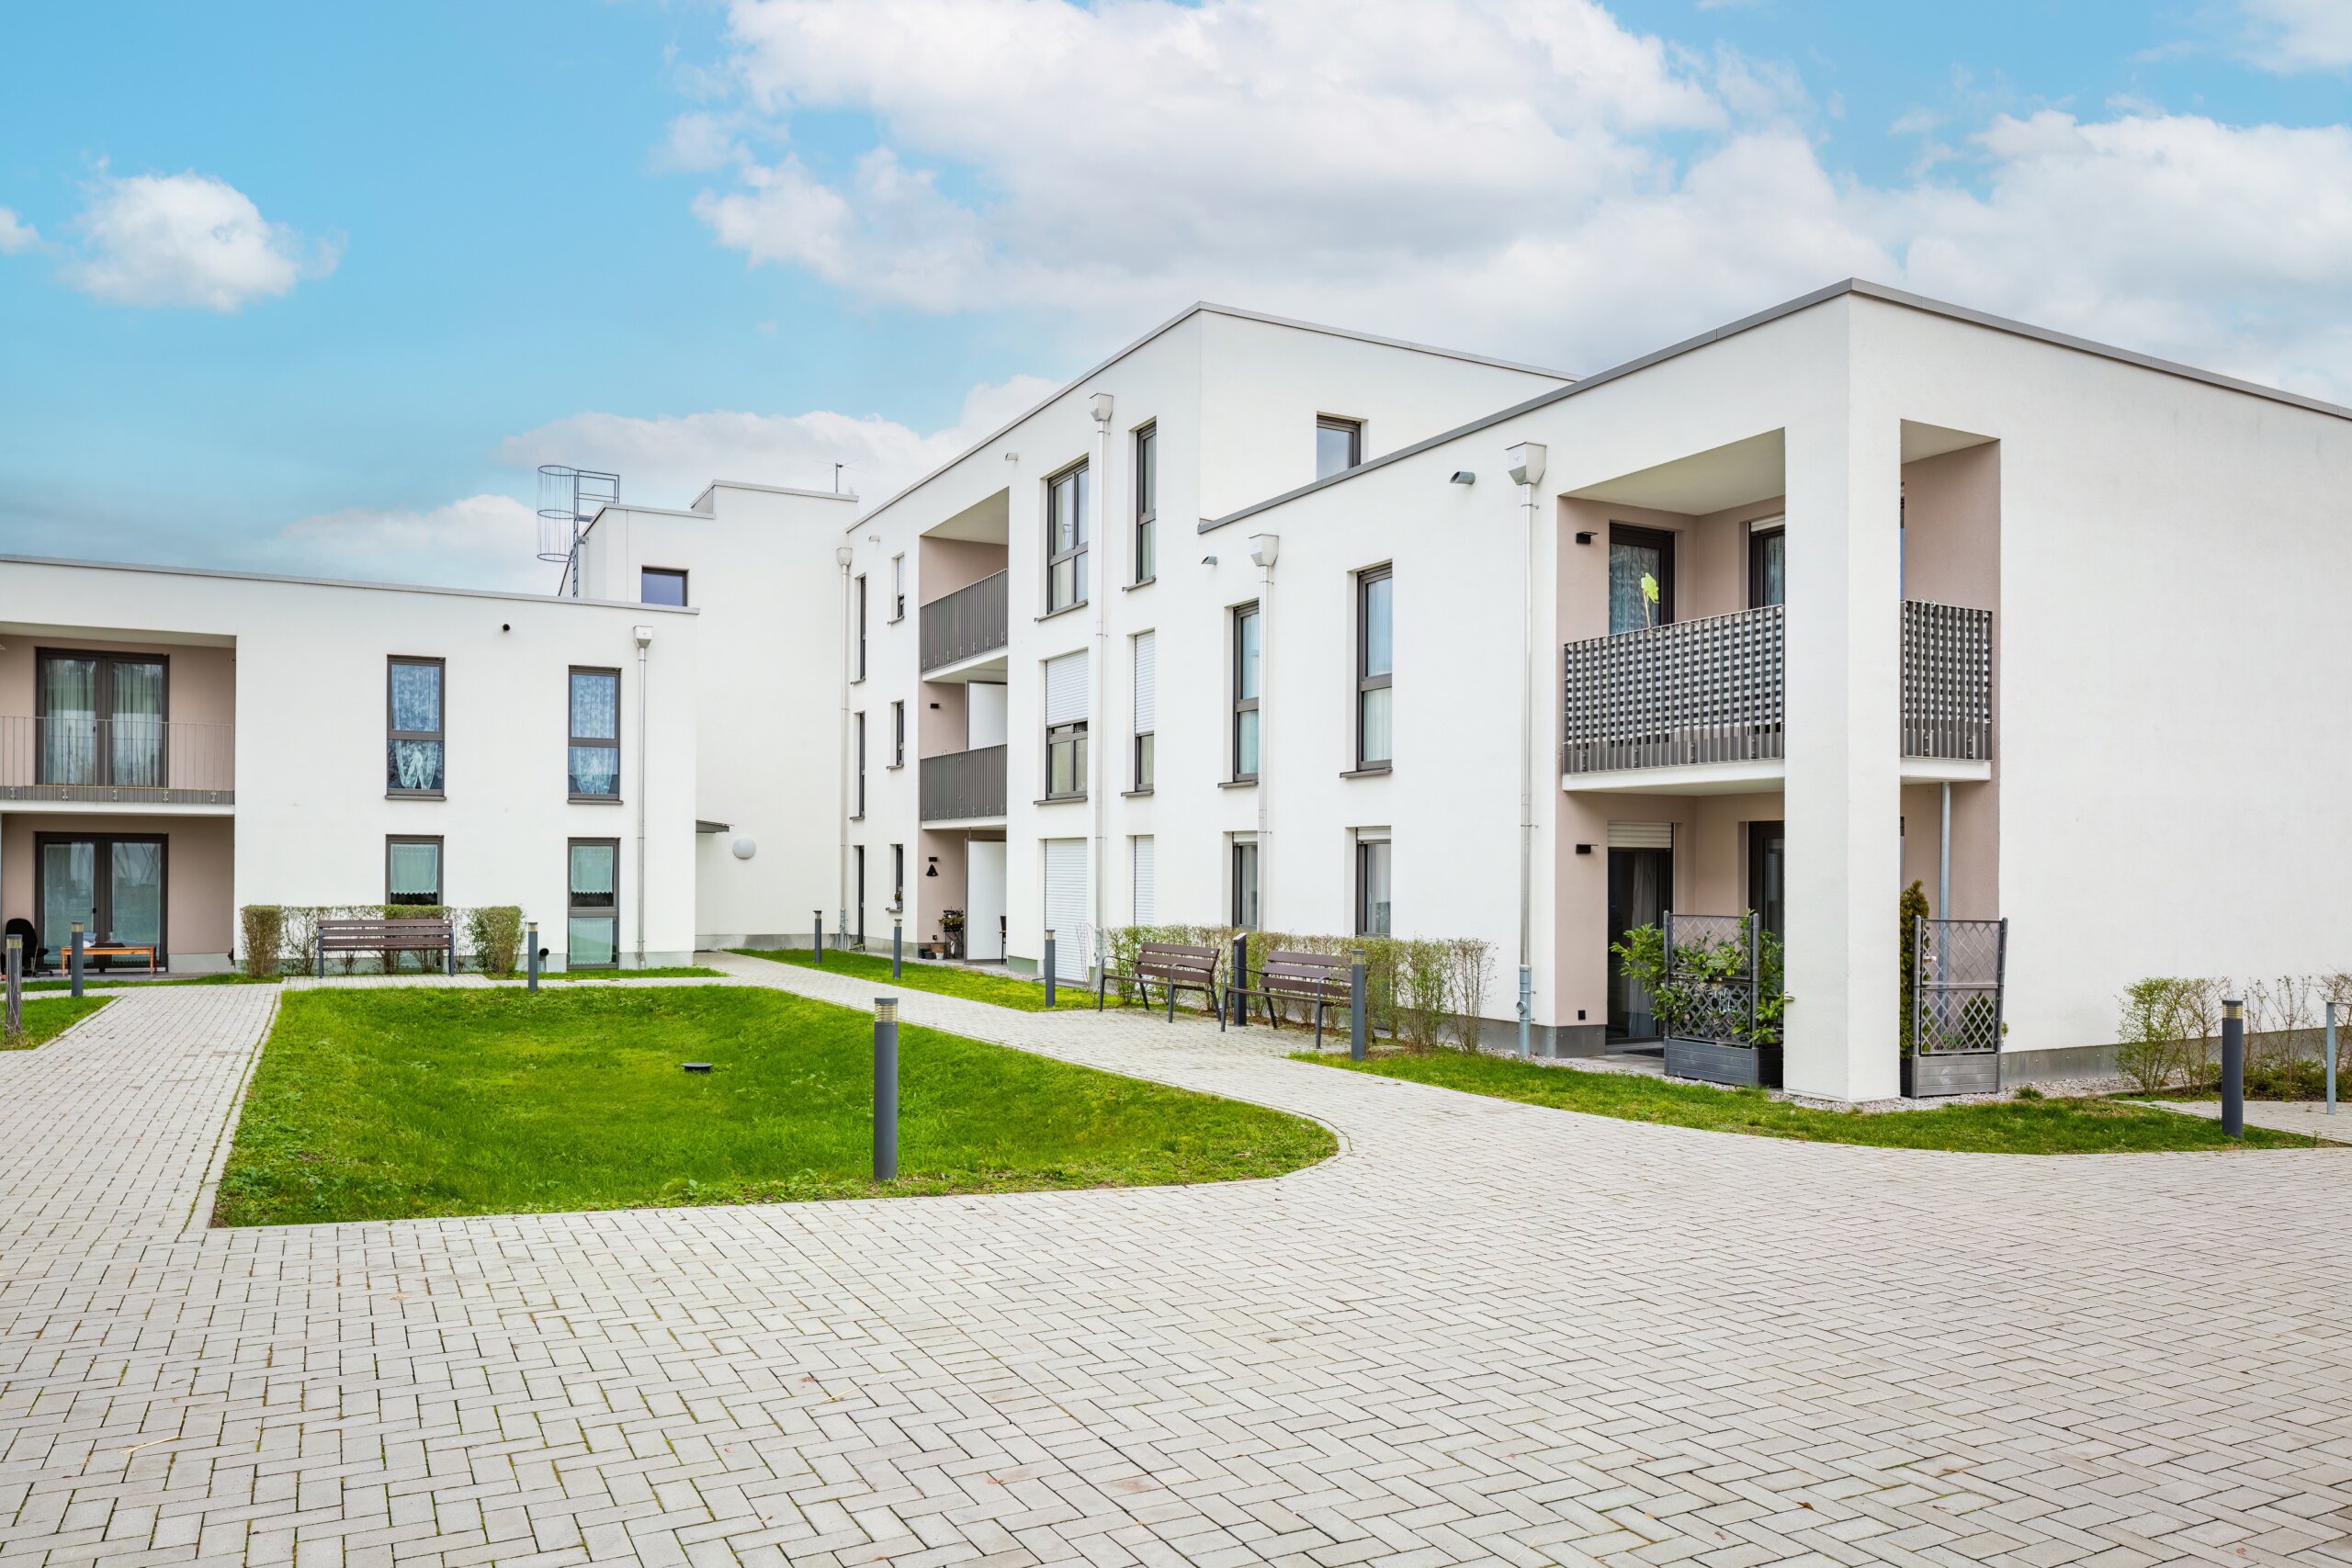 SENIORENGERECHTES WOHNEN: 3x barrierefreie Apartments in der Senioren-Residenz in Dettenheim